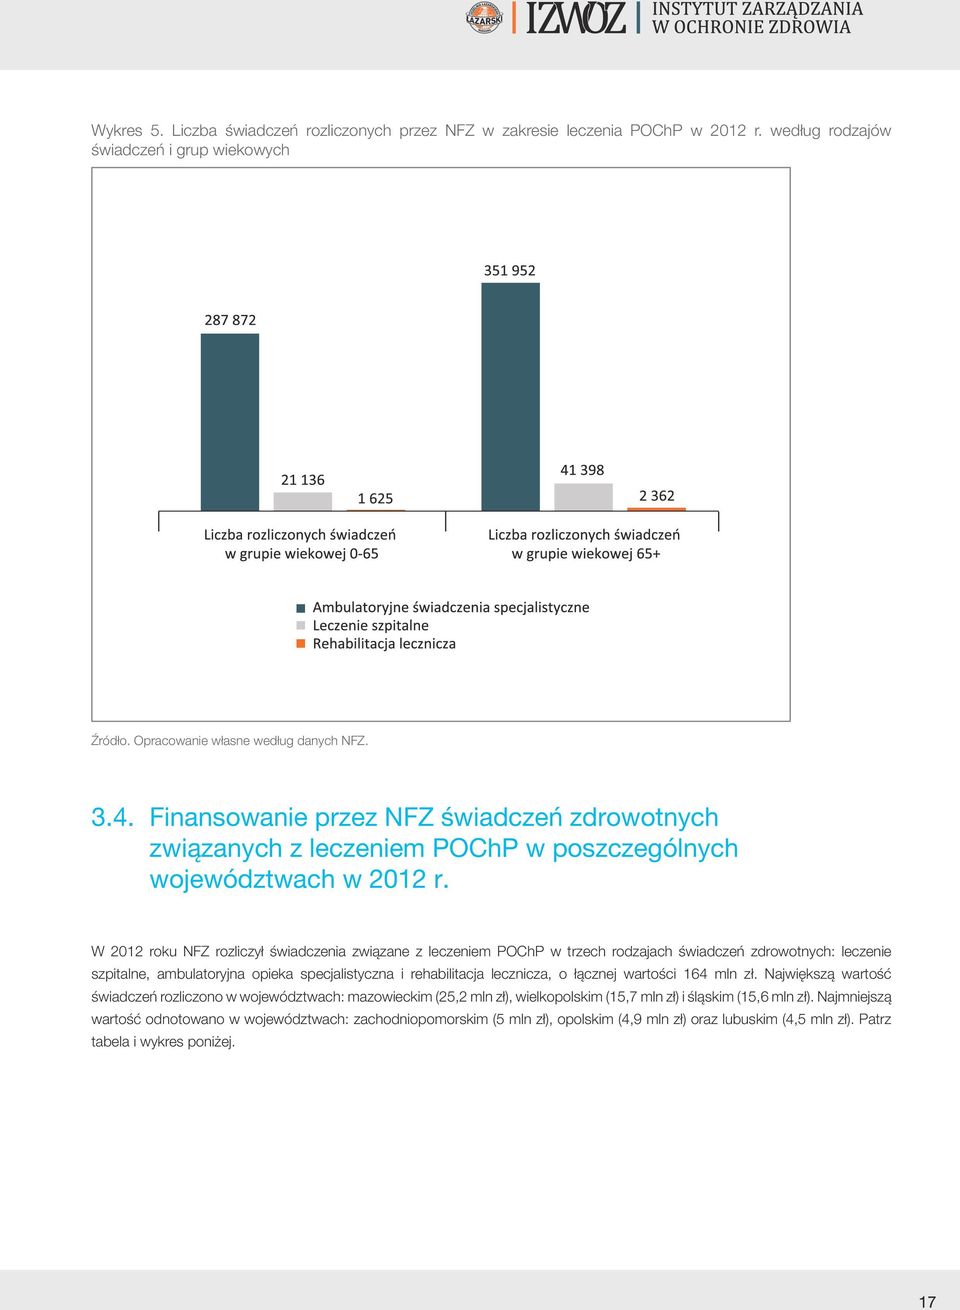 W 2012 roku NFZ rozliczył świadczenia związane z leczeniem POChP w trzech rodzajach świadczeń zdrowotnych: leczenie szpitalne, ambulatoryjna opieka specjalistyczna i rehabilitacja lecznicza, o